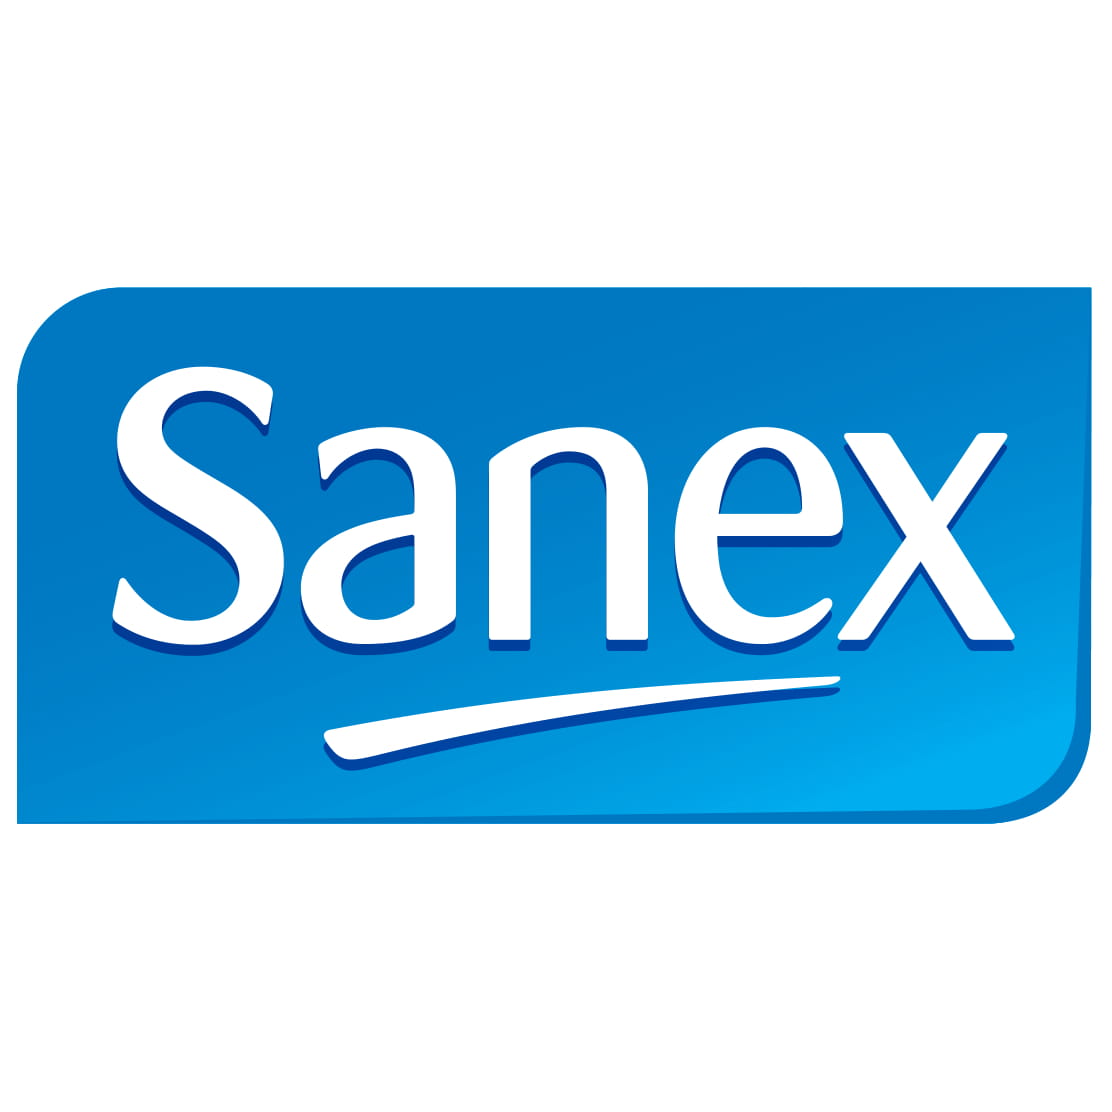 6x Sanex Zero Gevoelige Huid Douchegel 500ml, VoordeligInslaan.nl